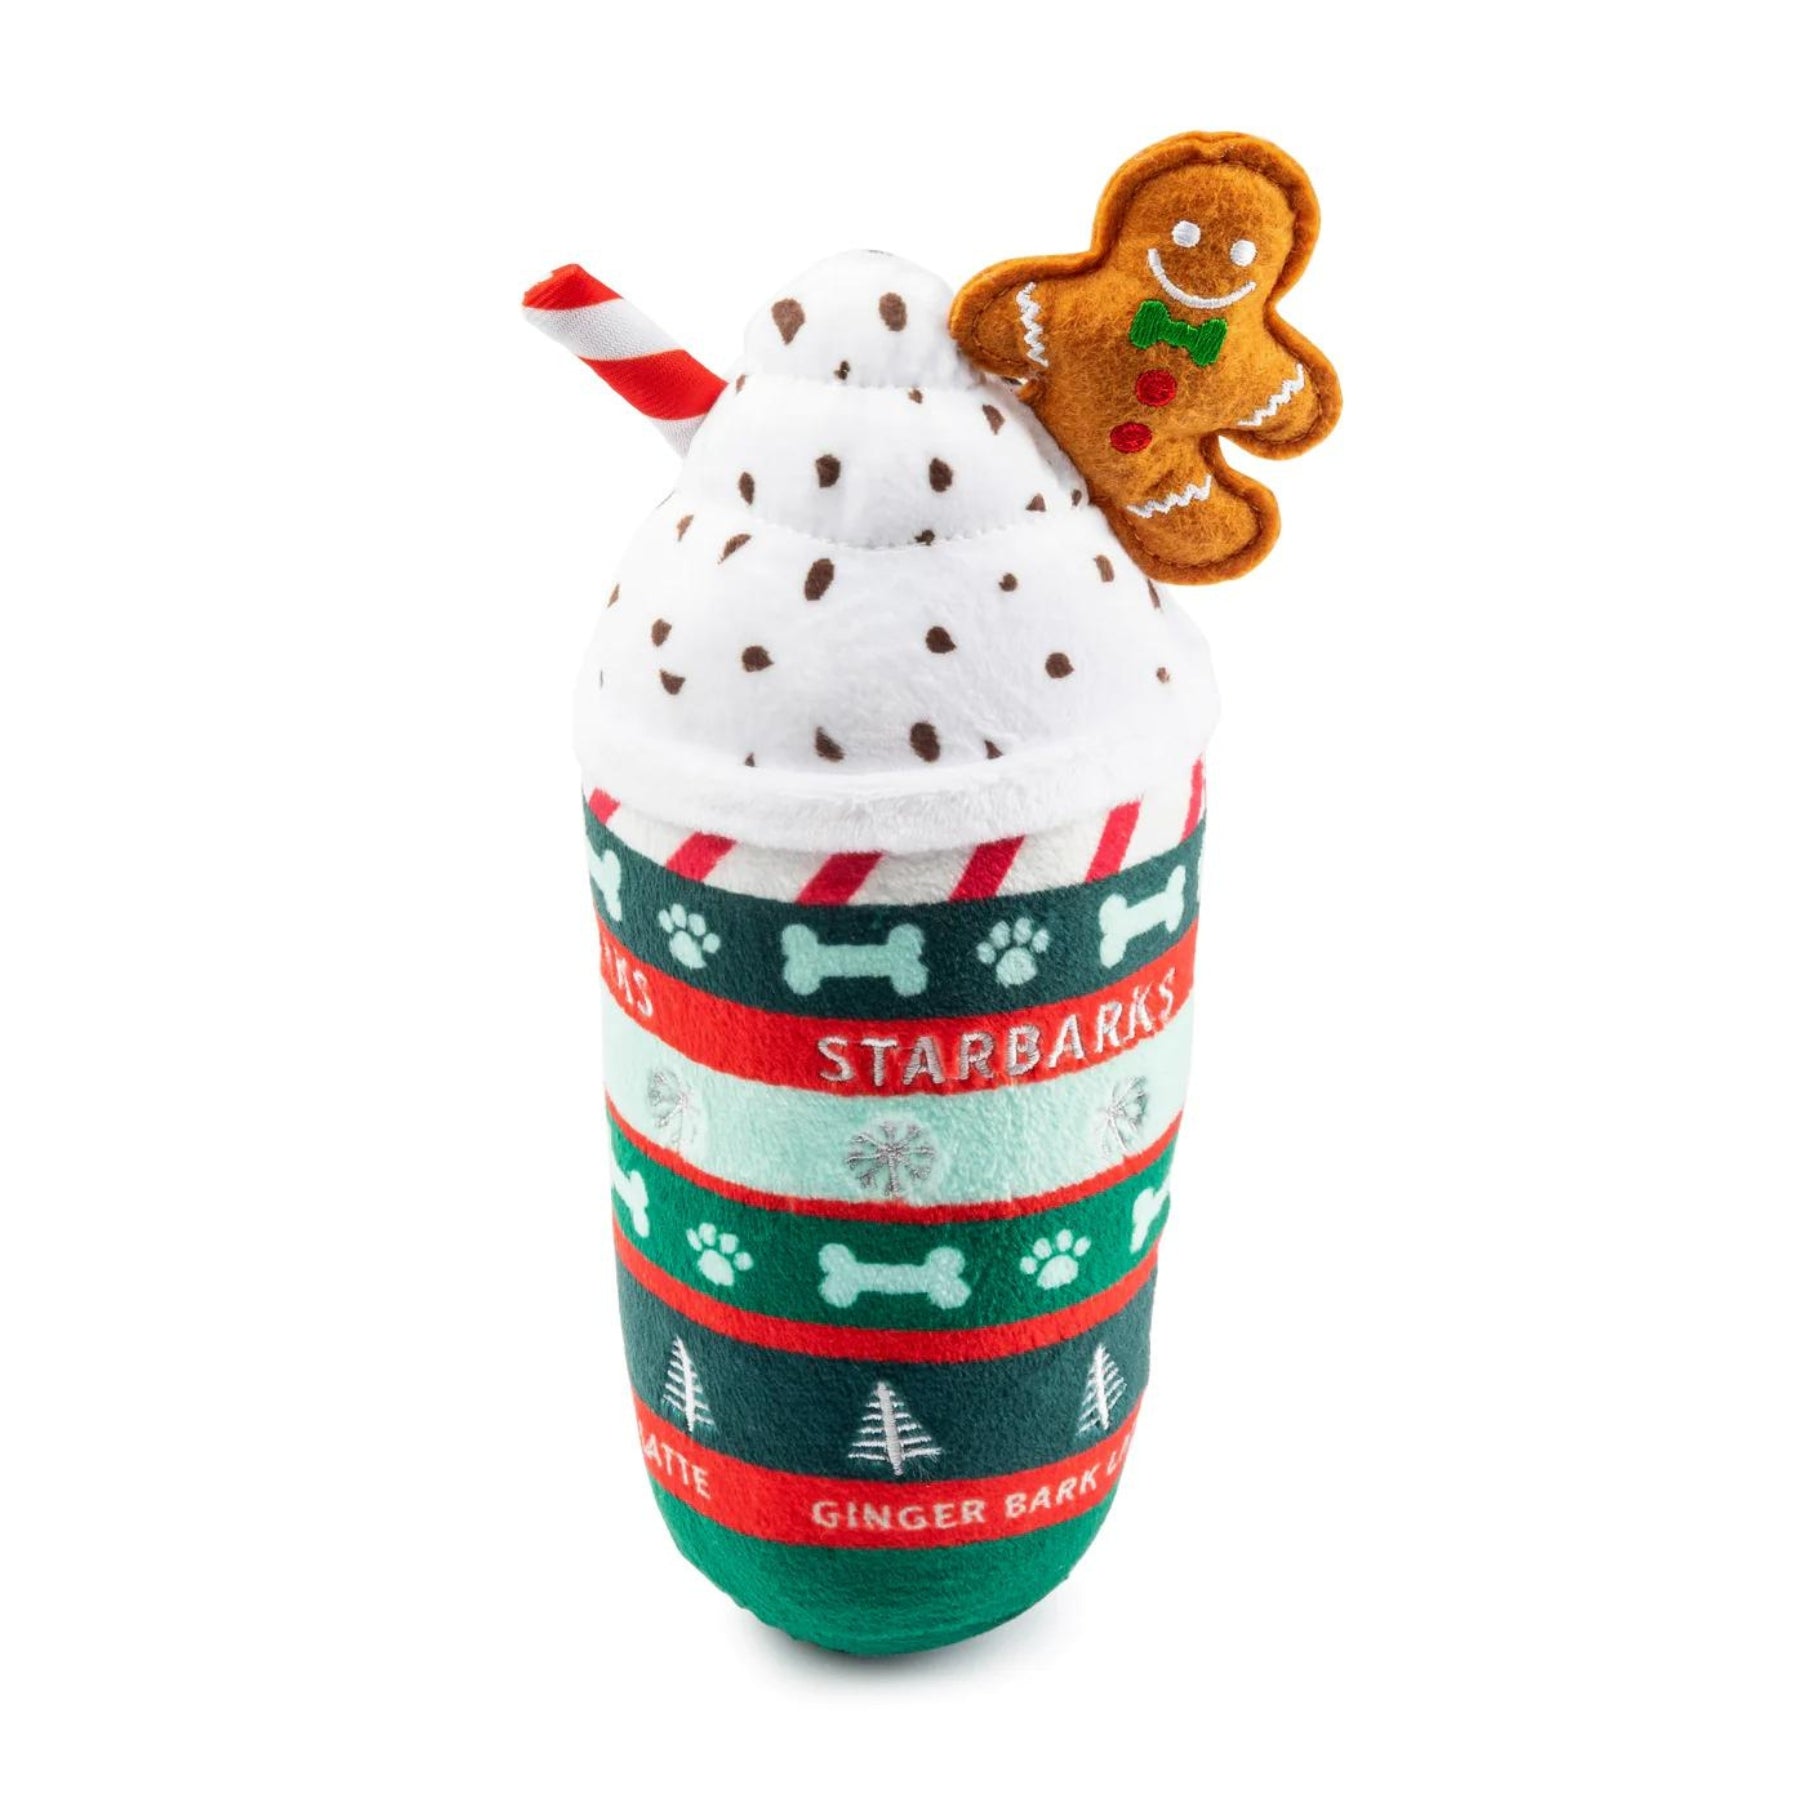 Starbarks Ginger Bark Latte Christmas Dog Toy - Pooch Luxury